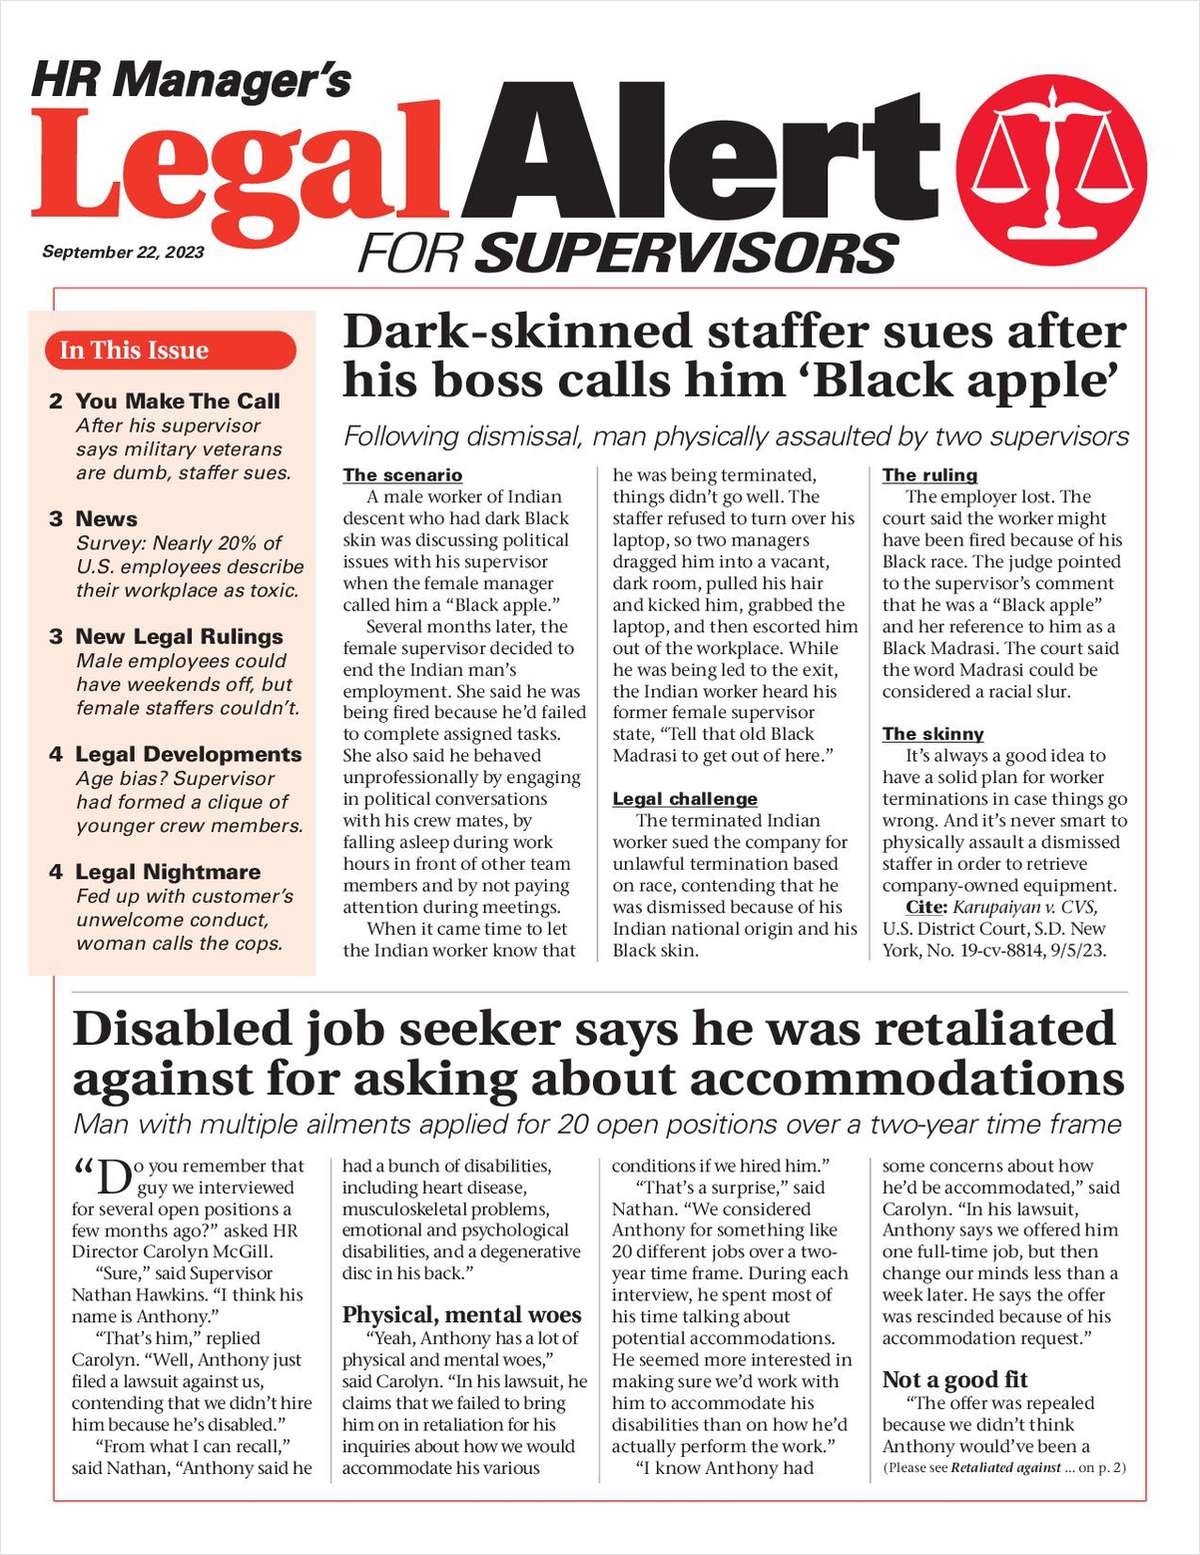 HR Manager's Legal Alert for Supervisors Newsletter: September 22 Edition